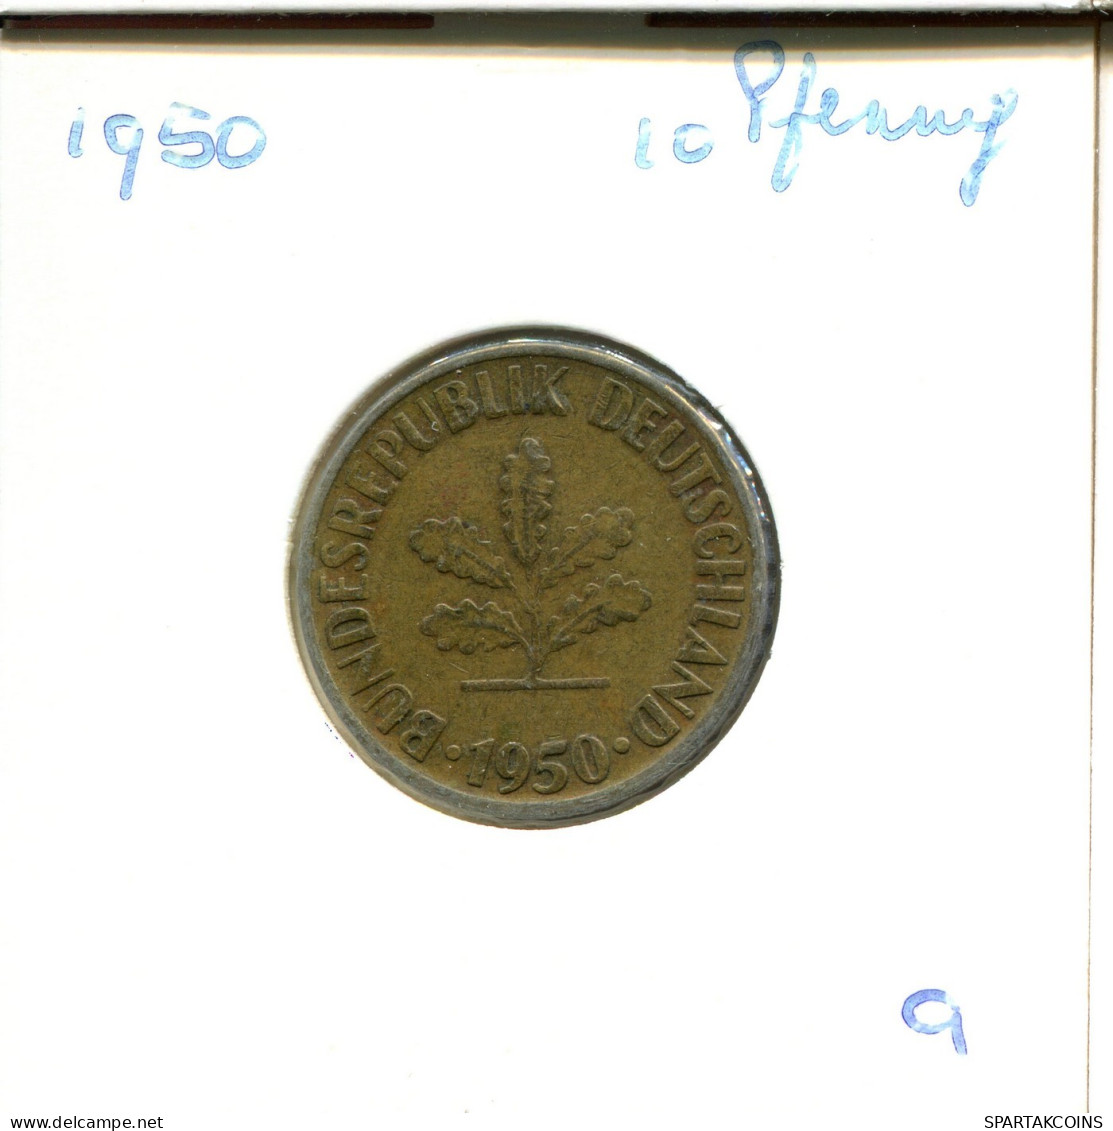 10 PFENNIG 1950 G WEST & UNIFIED GERMANY Coin #DA894.U.A - 10 Pfennig